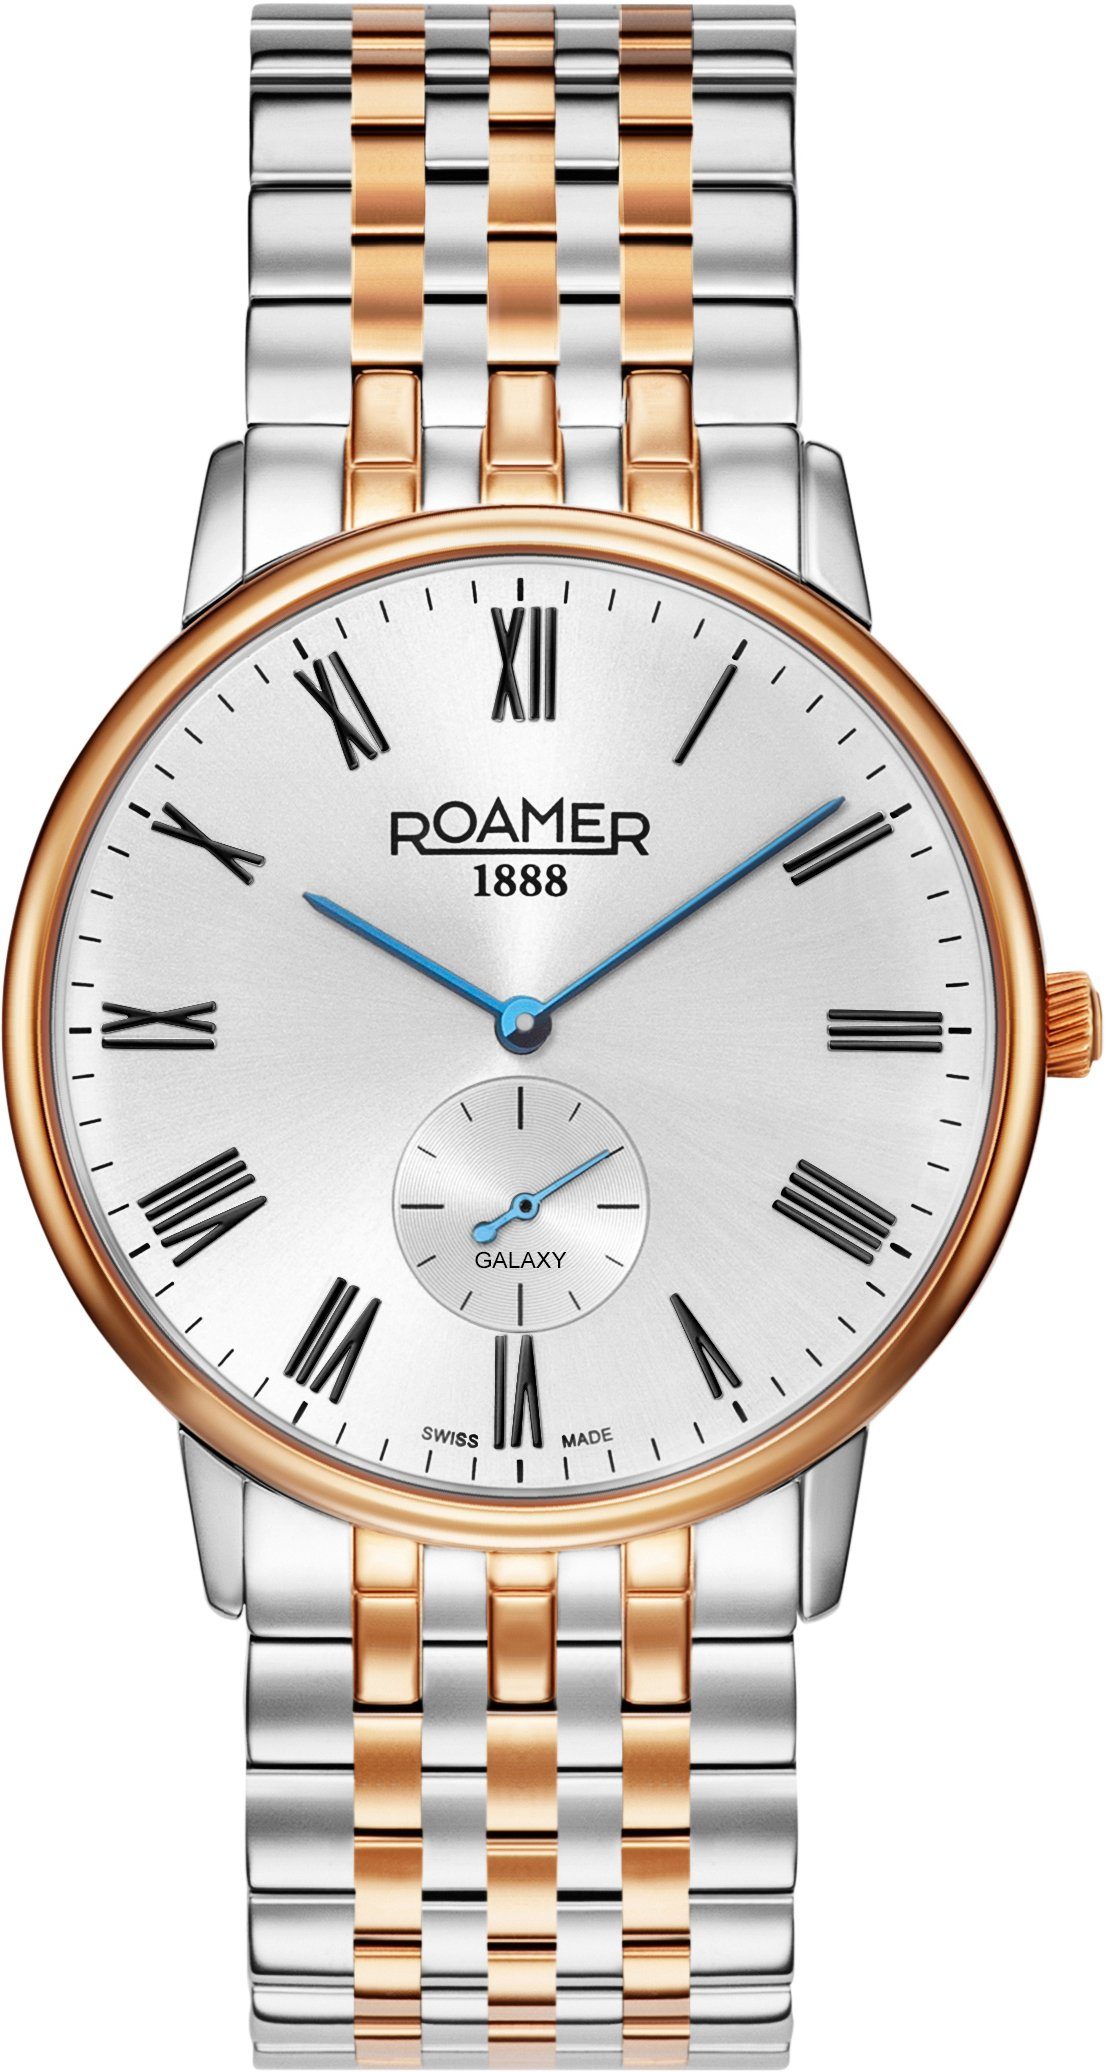 Herren Uhren Roamer Schweizer Uhr Galaxy Gents, 620710 49 15 50